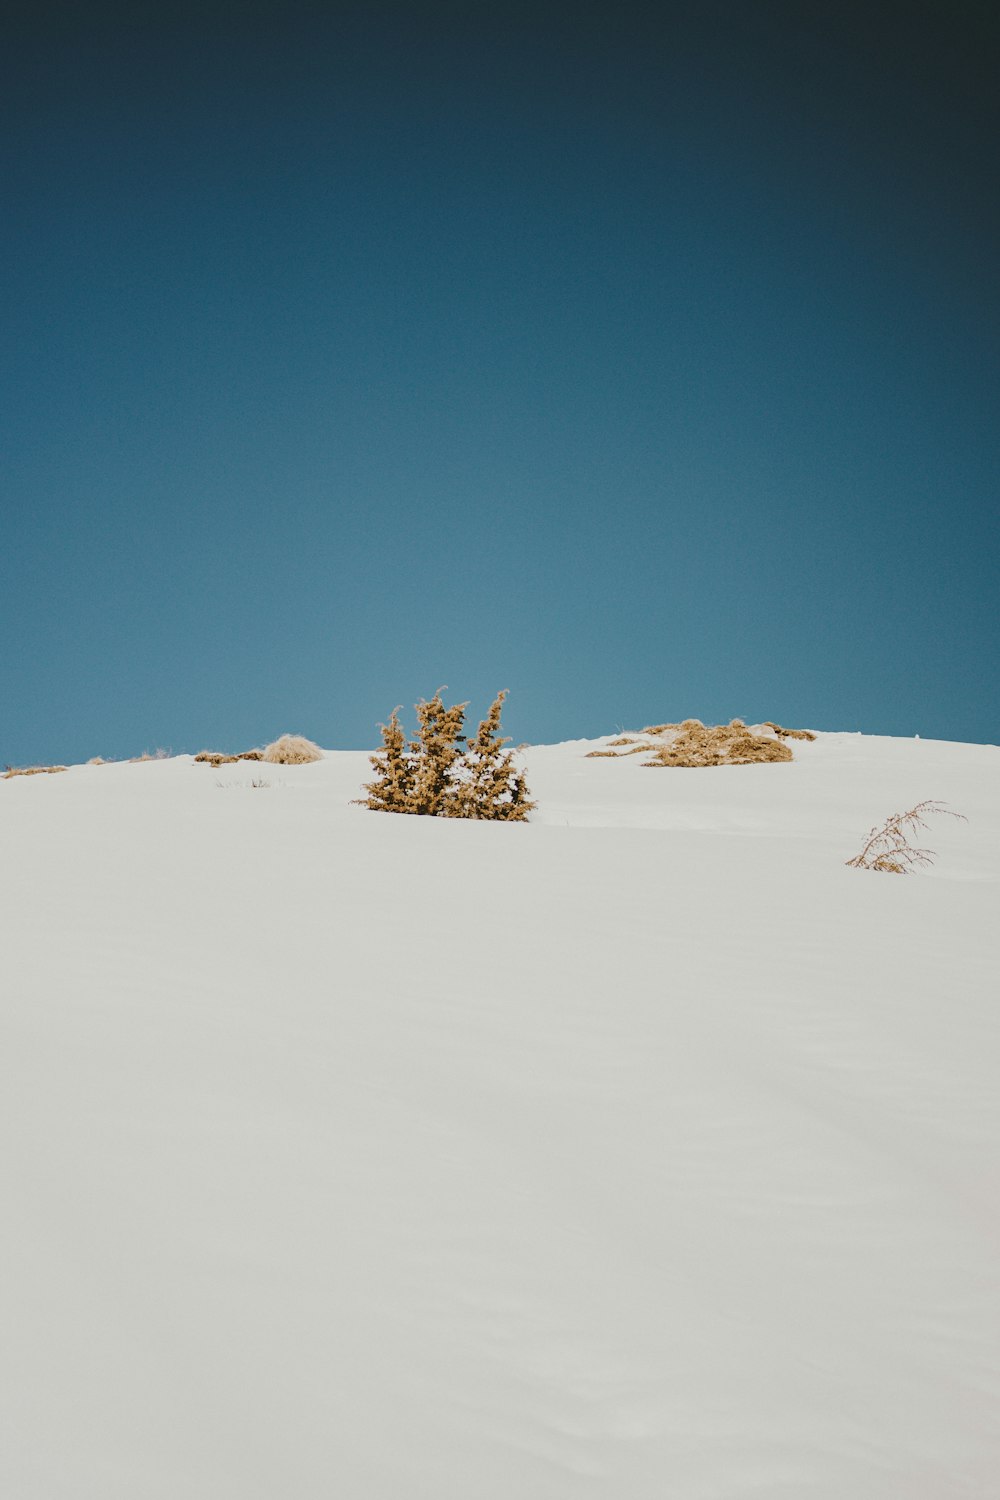 Una persona montando esquís en la cima de una pendiente cubierta de nieve